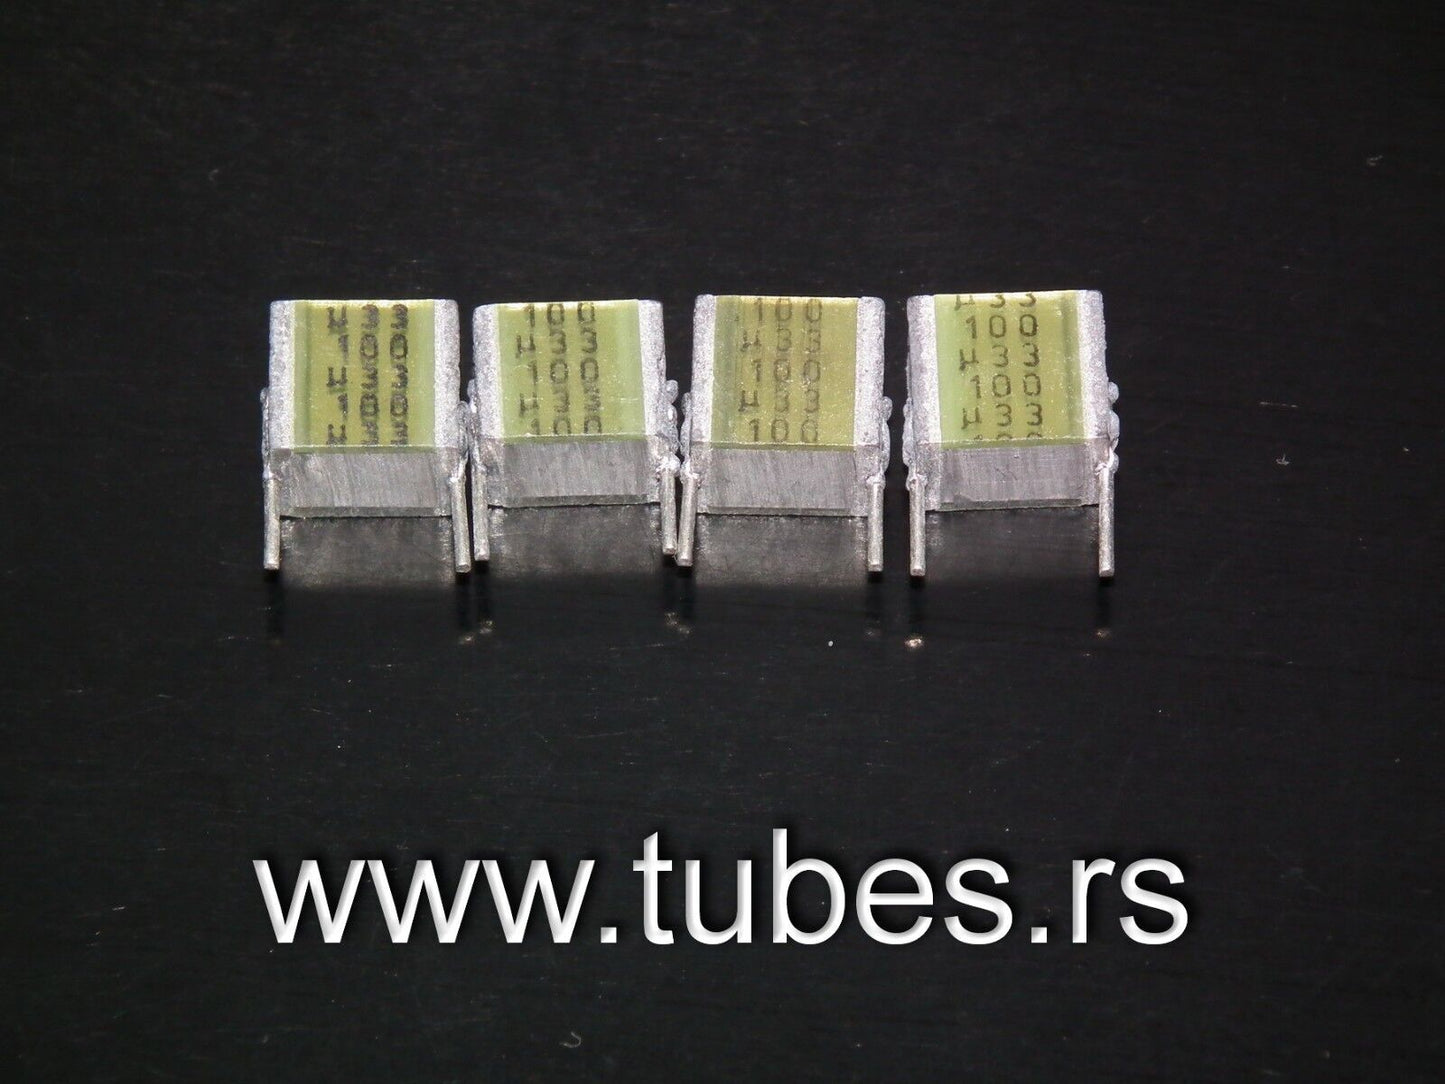 Four NOS vintage Siemens MKT Silver capacitors 330nF 100V W. Germany 0.33u 100V